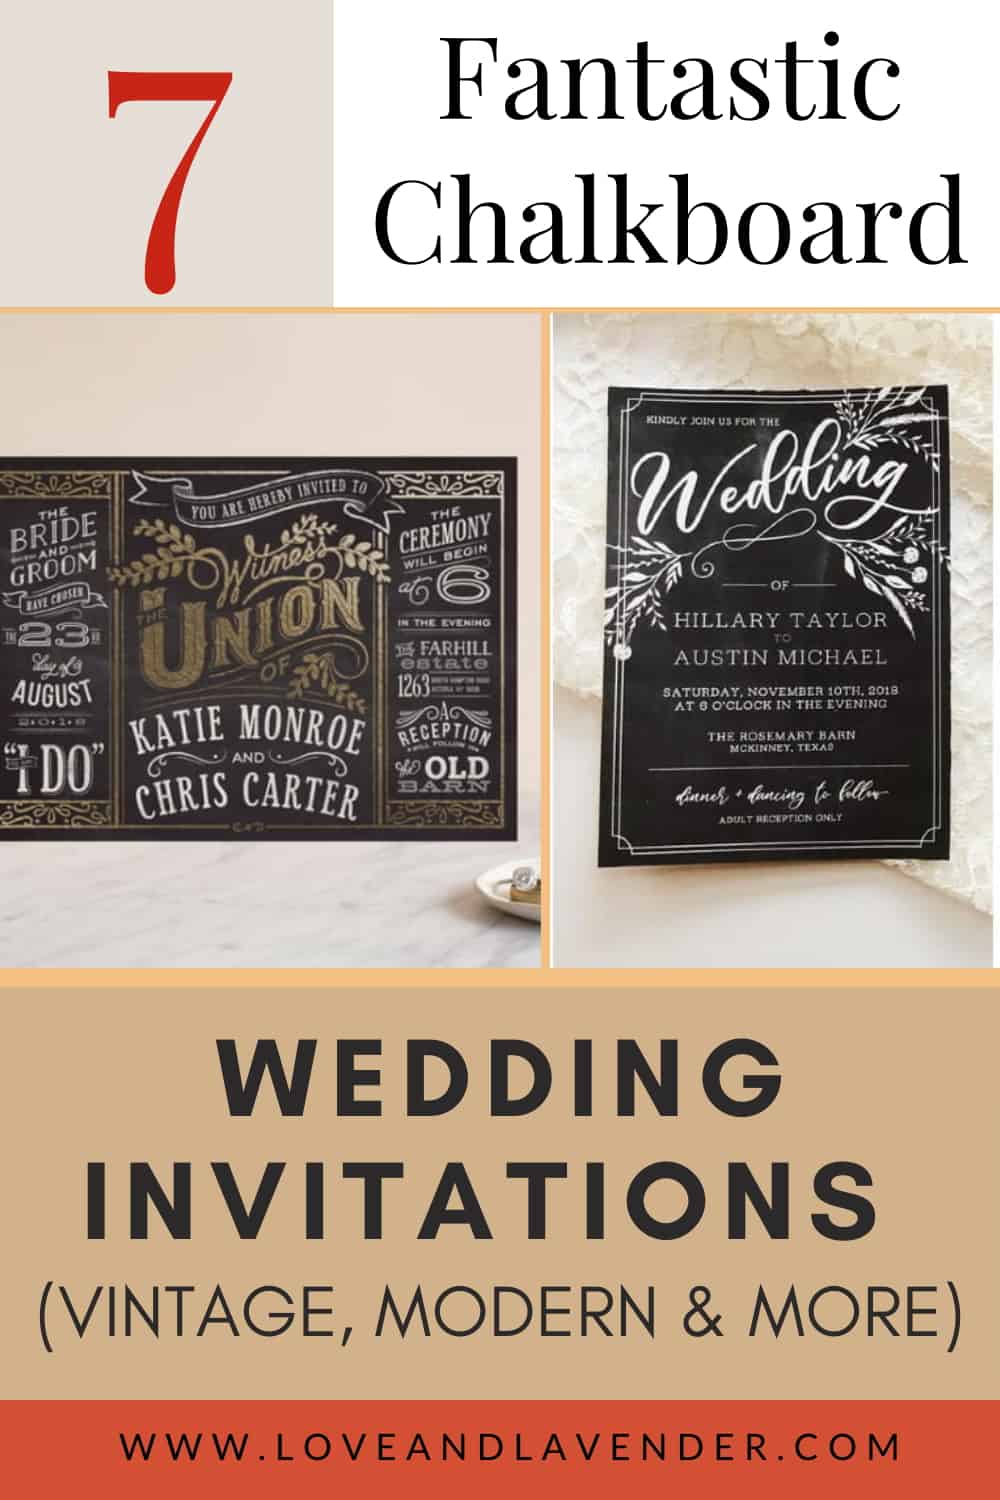 10 Fantastic Chalkboard Wedding Invitations (Vintage, Modern & More)